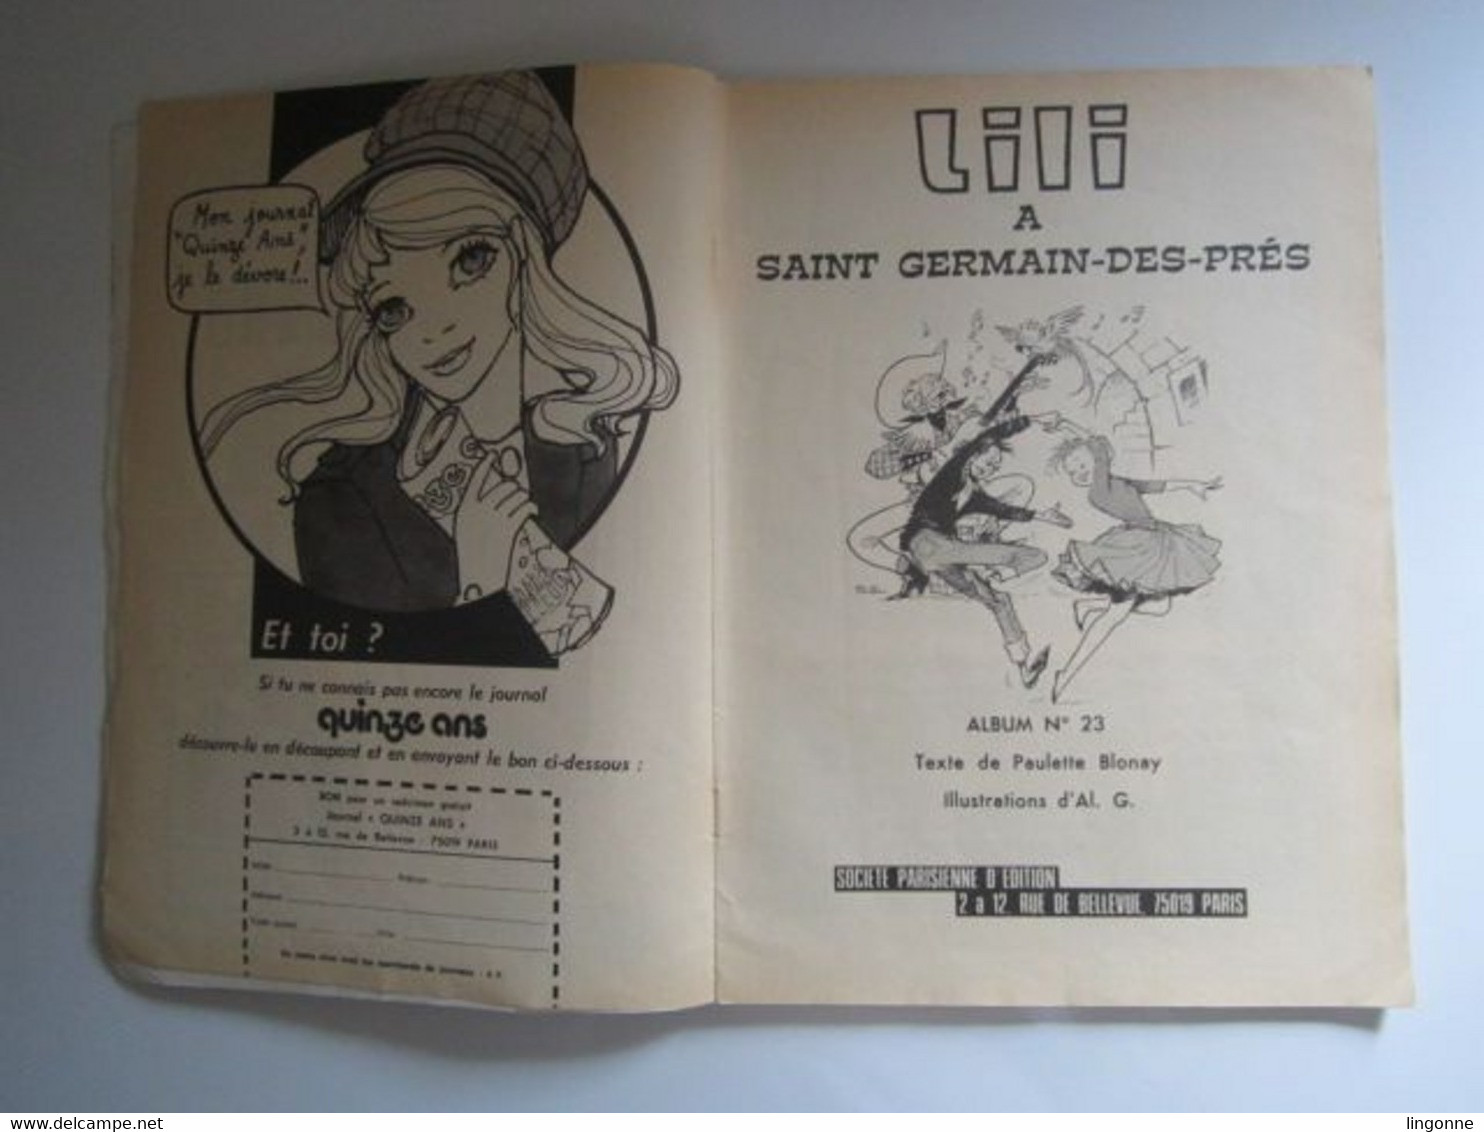 BD SOUPLE Magazine Ancien Lili à SAINT GERMAIN DES PRES 1974 Albums Jeunesse Joyeuse Numéro 23 (en L'état) - Lili L'Espiègle